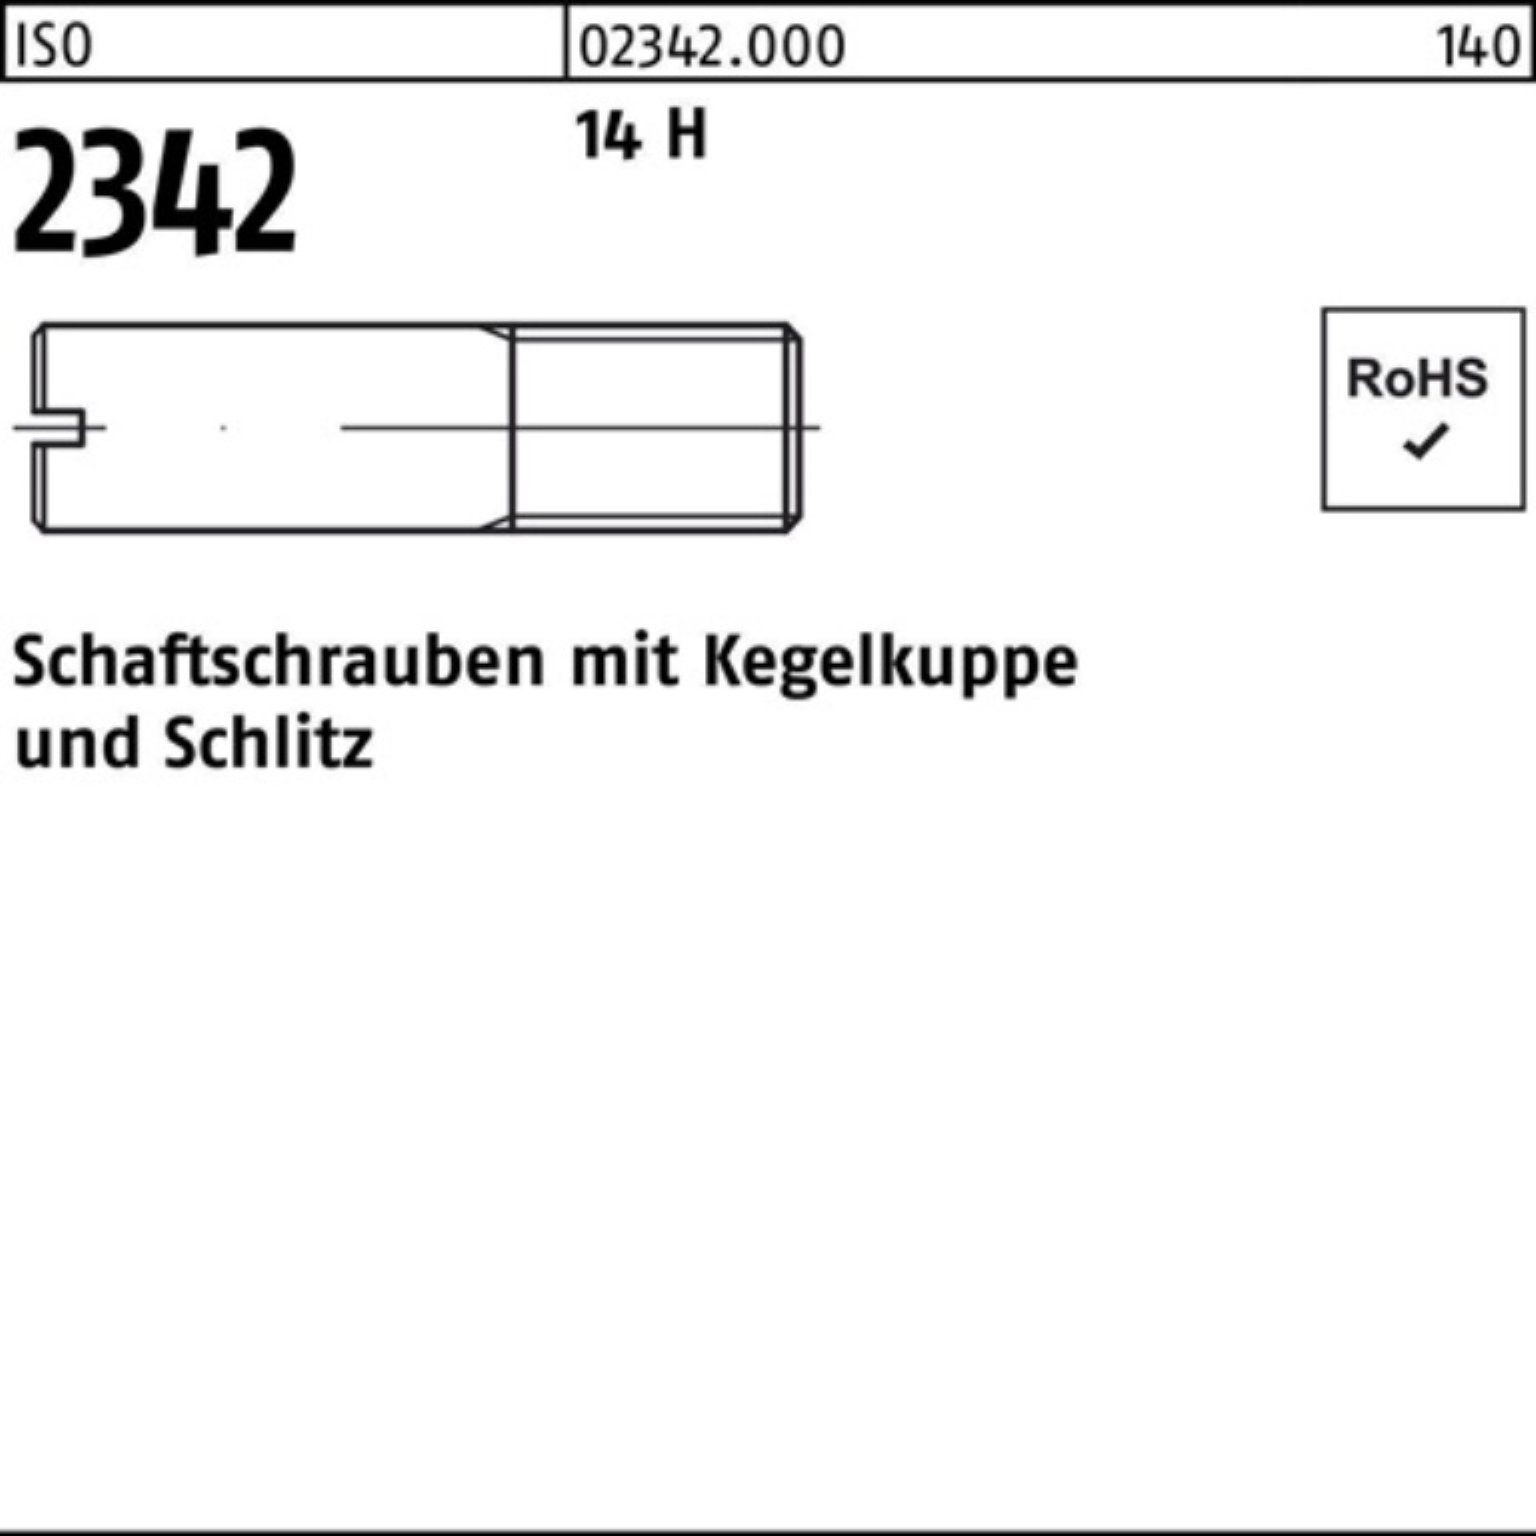 100er Schaftschraube H 2342 50 14 ISO Pack Reyher Kegelkuppe/Schlitz Schraube M12x 50